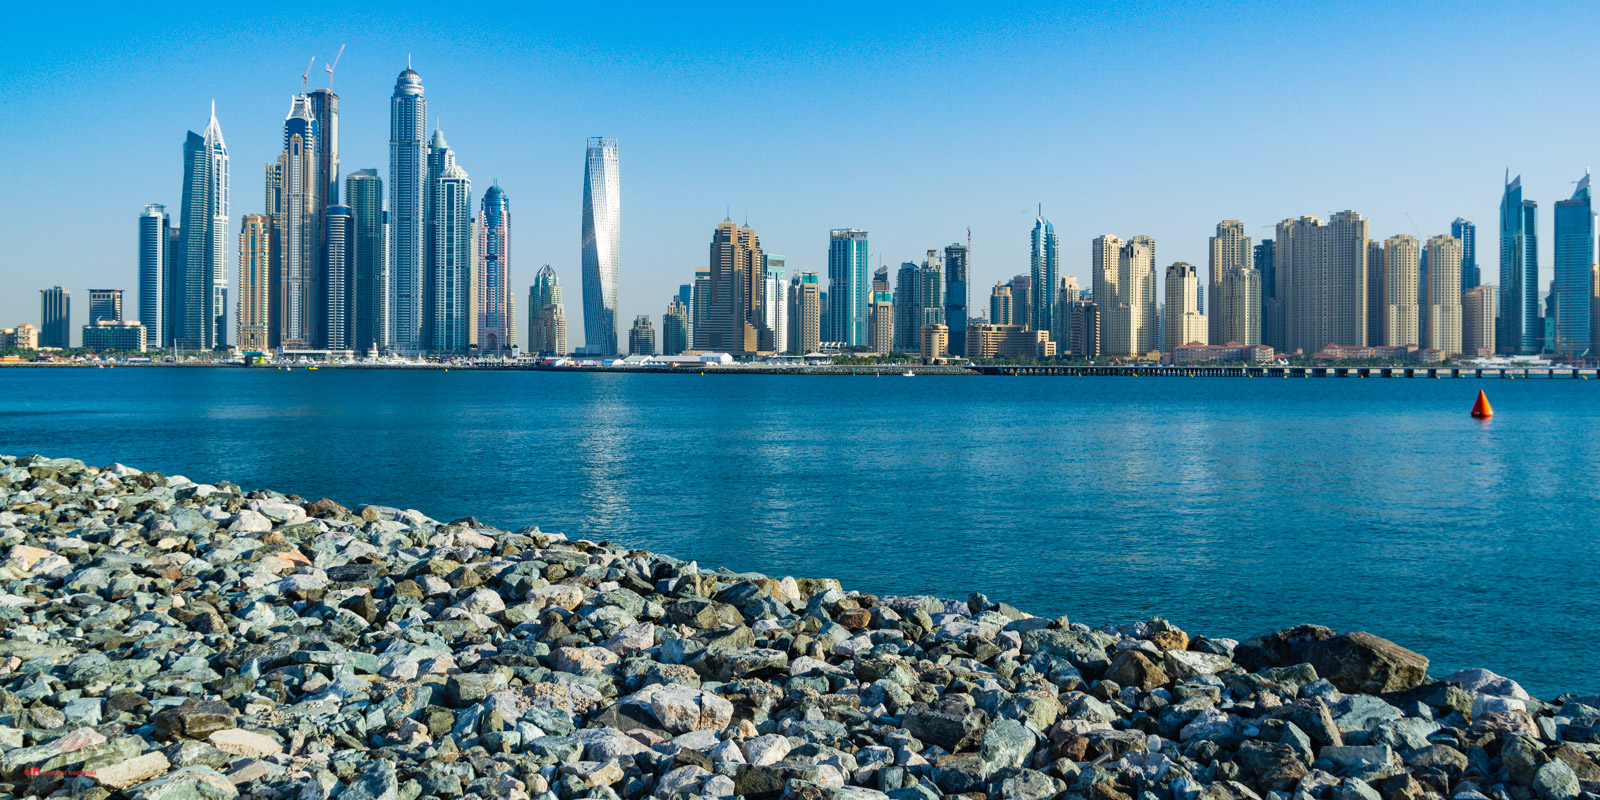 View of Dubai Marina from Palm Jumeirah